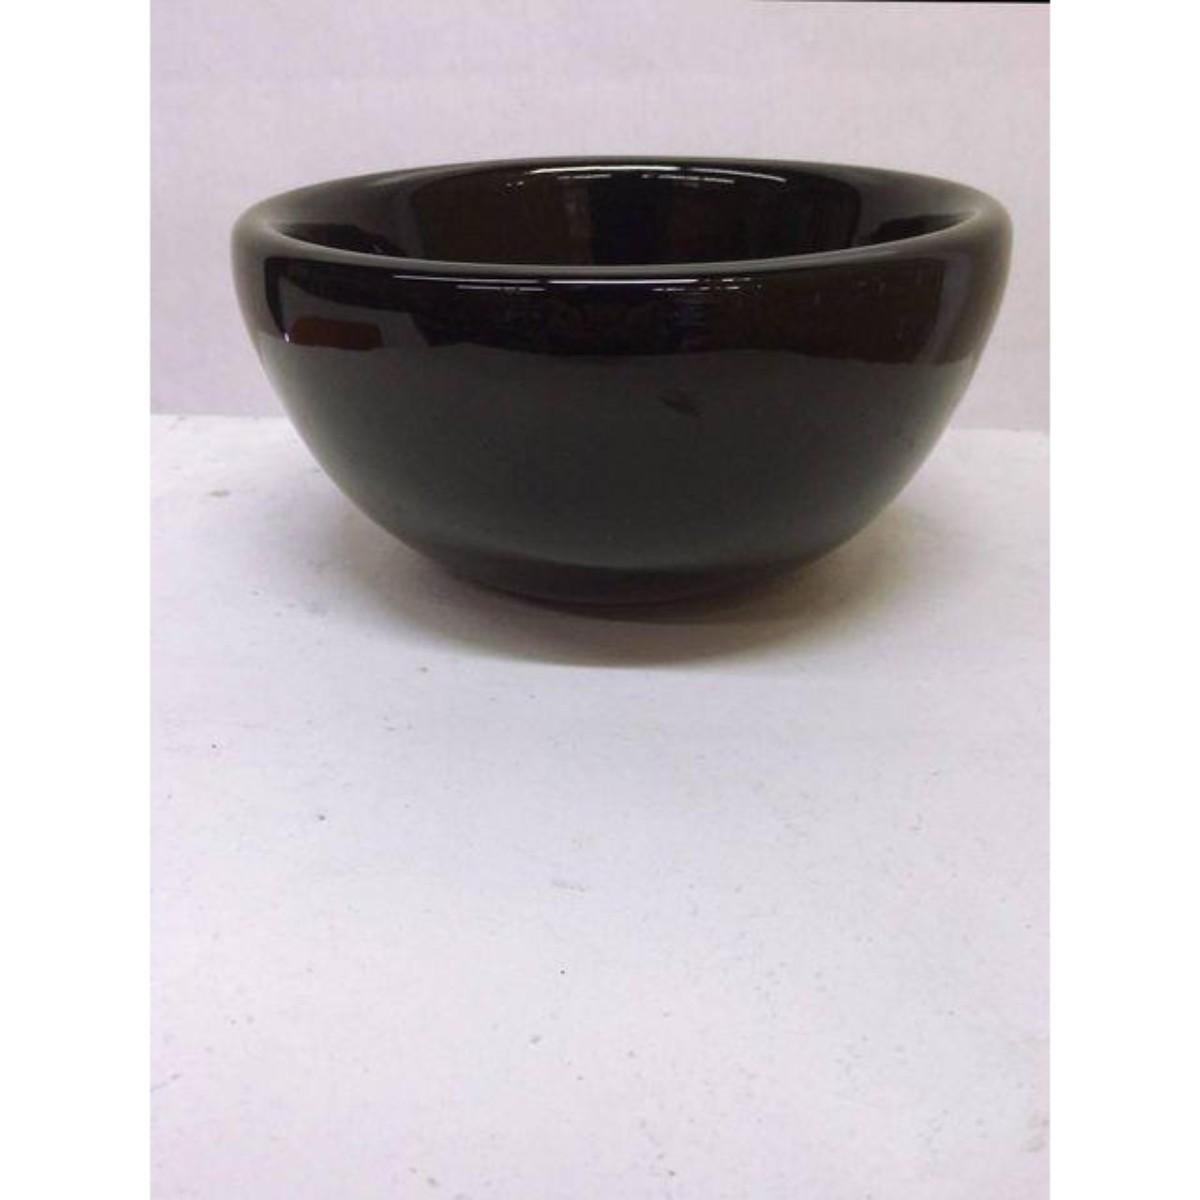 Original plain black Bodum ceramic bowl by C. Jorgensen.